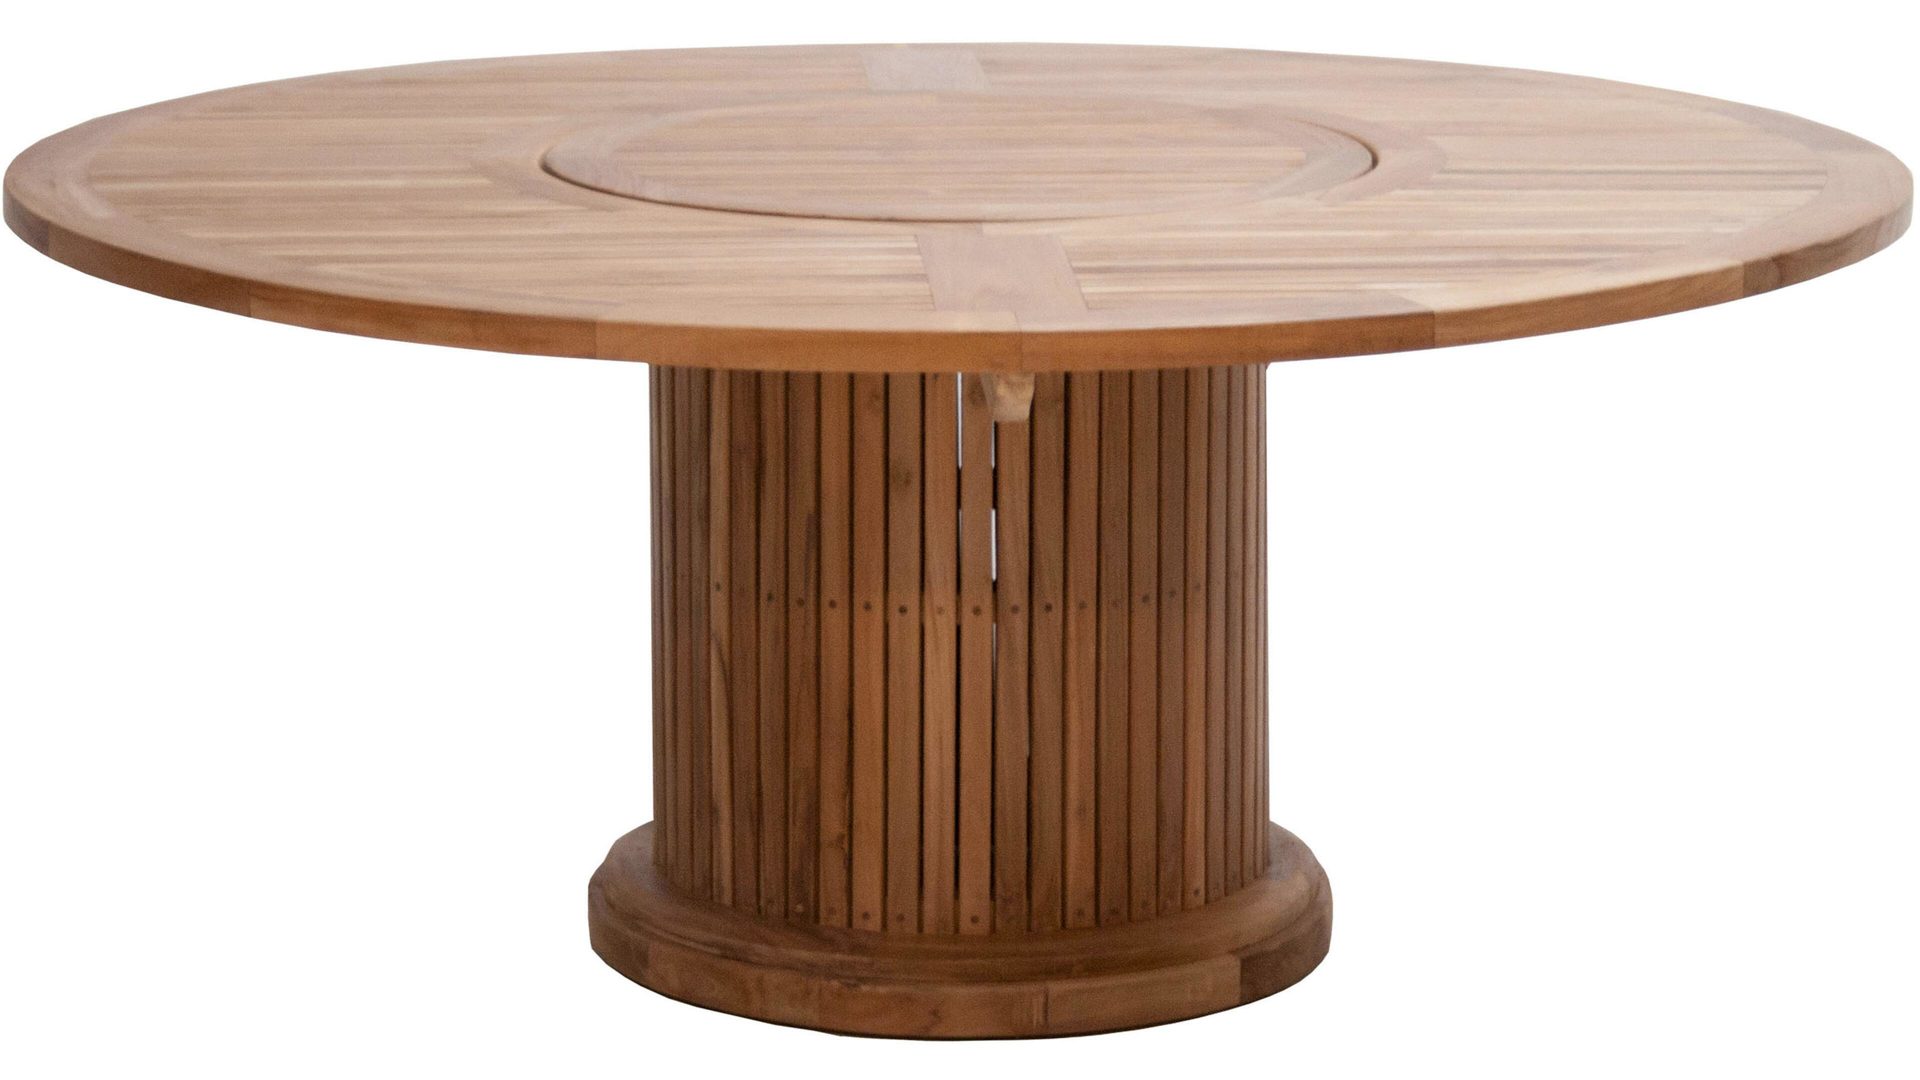 Gartentisch Ploß aus Holz in Holzfarben Ploß® Teakholztisch Phoenix als Gartenmöbel honigfarbenes Old-Teak – Durchmesser ca. 160 cm